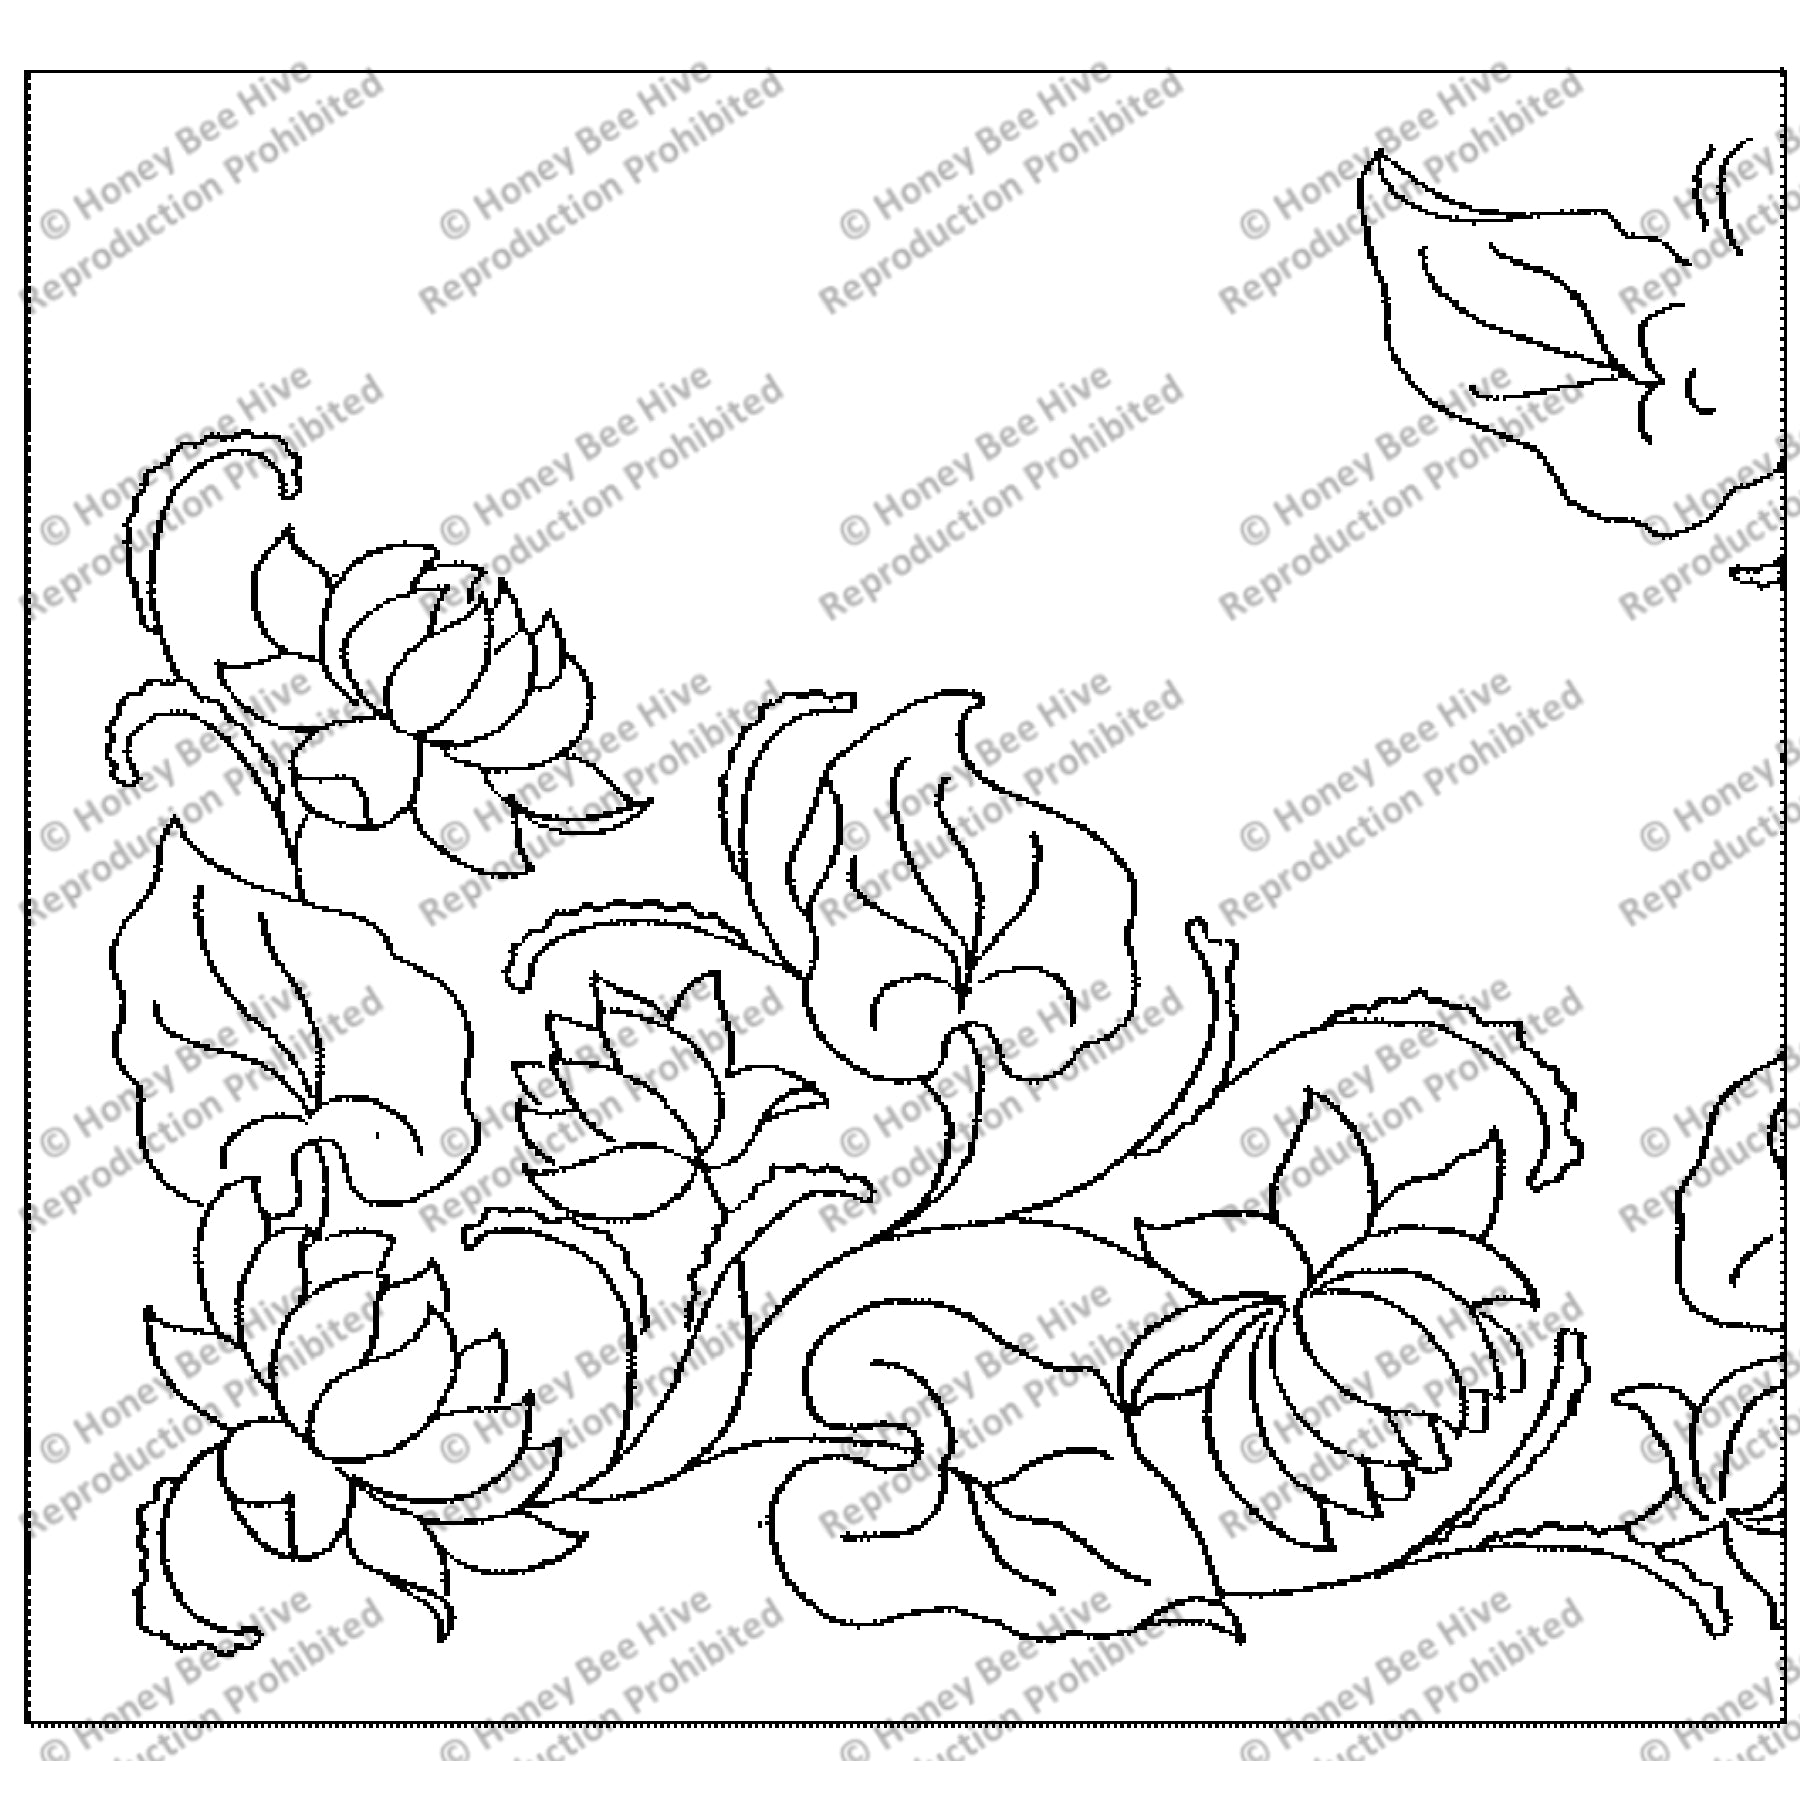 Water Lilies, rug hooking pattern